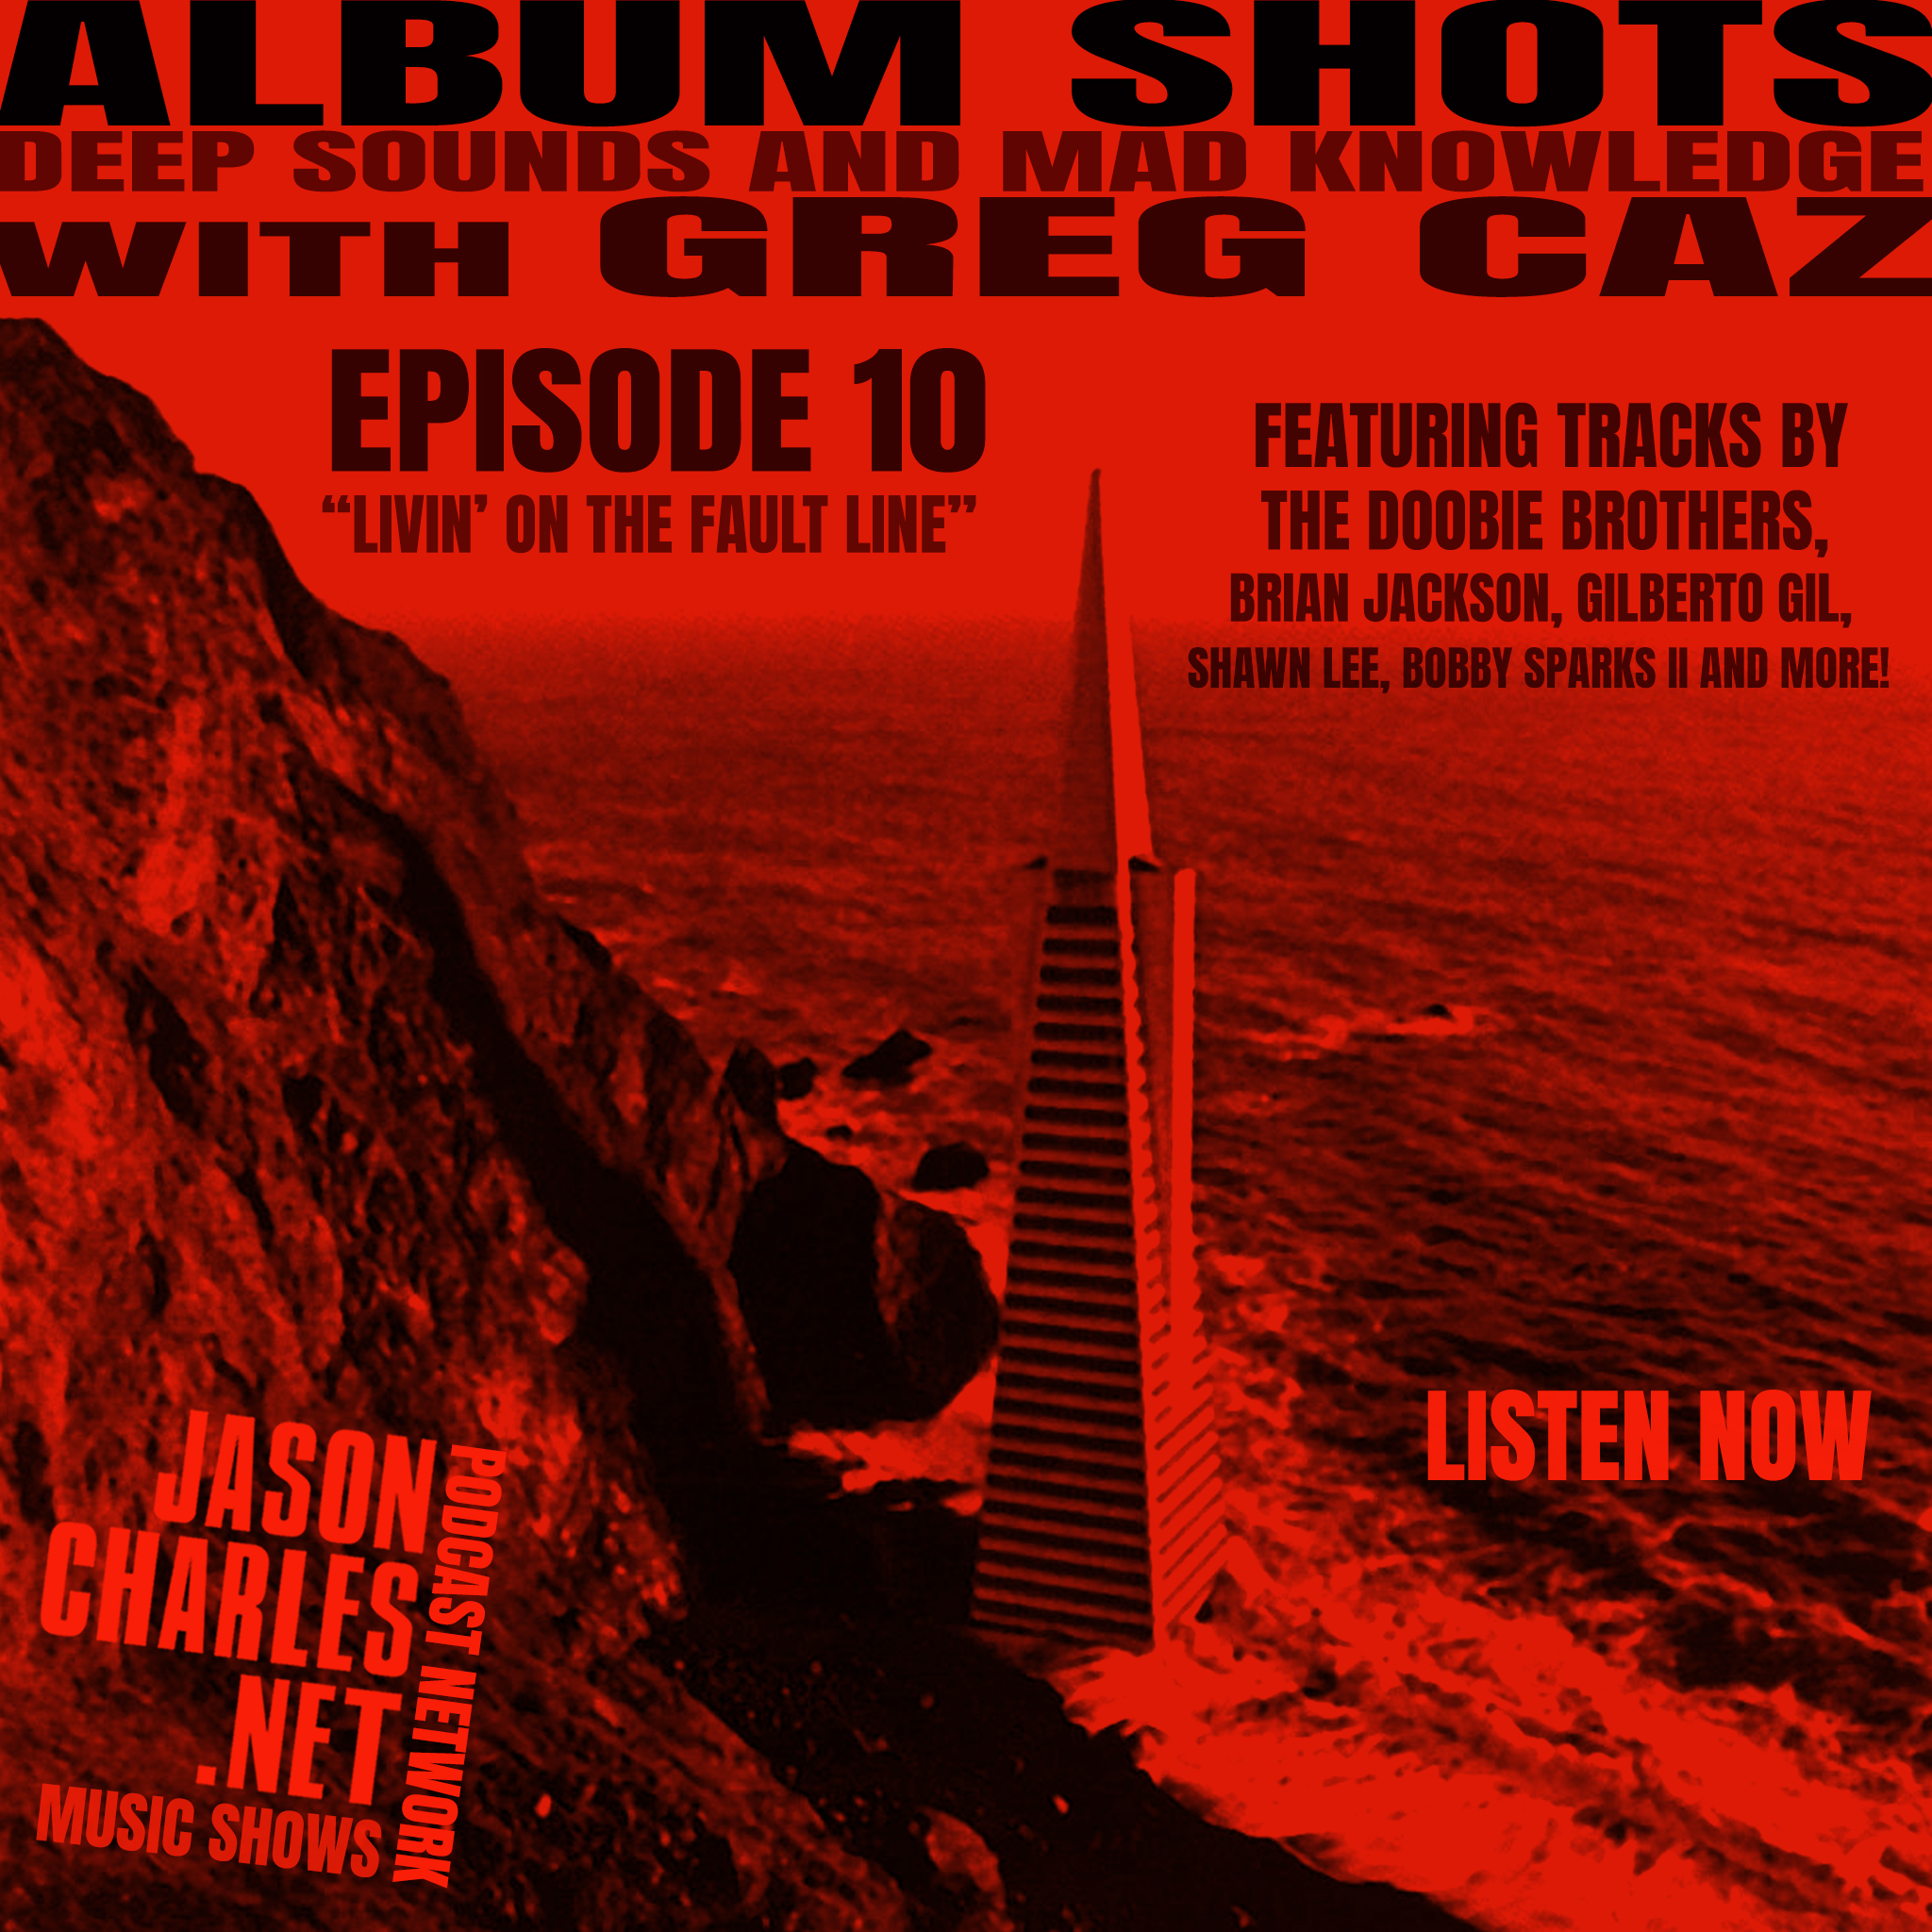 ALBUM SHOTS Episode 10 Livin' On The Fault Line